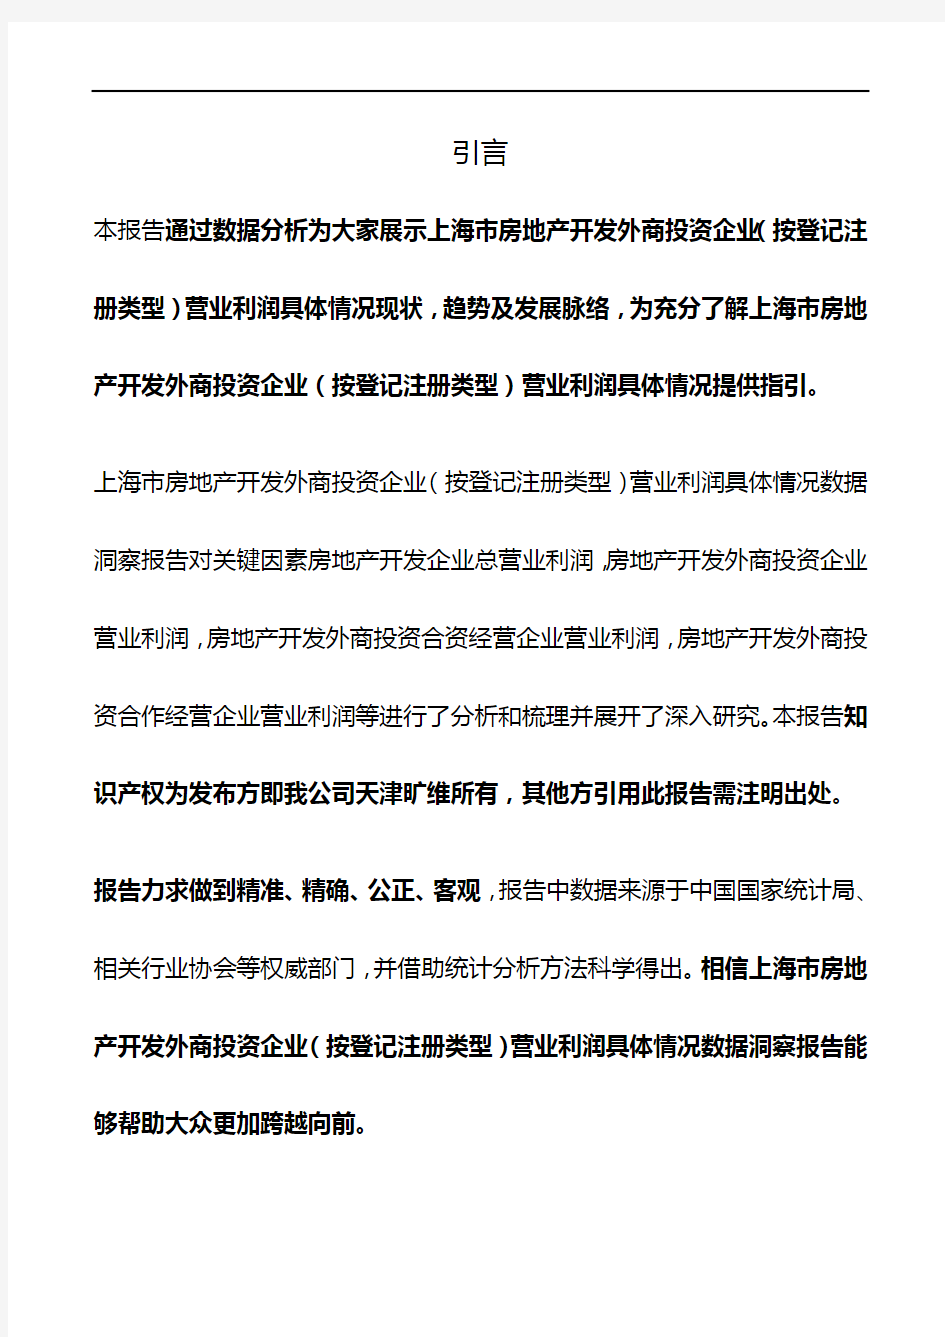 上海市房地产开发外商投资企业(按登记注册类型)营业利润具体情况3年数据洞察报告2019版